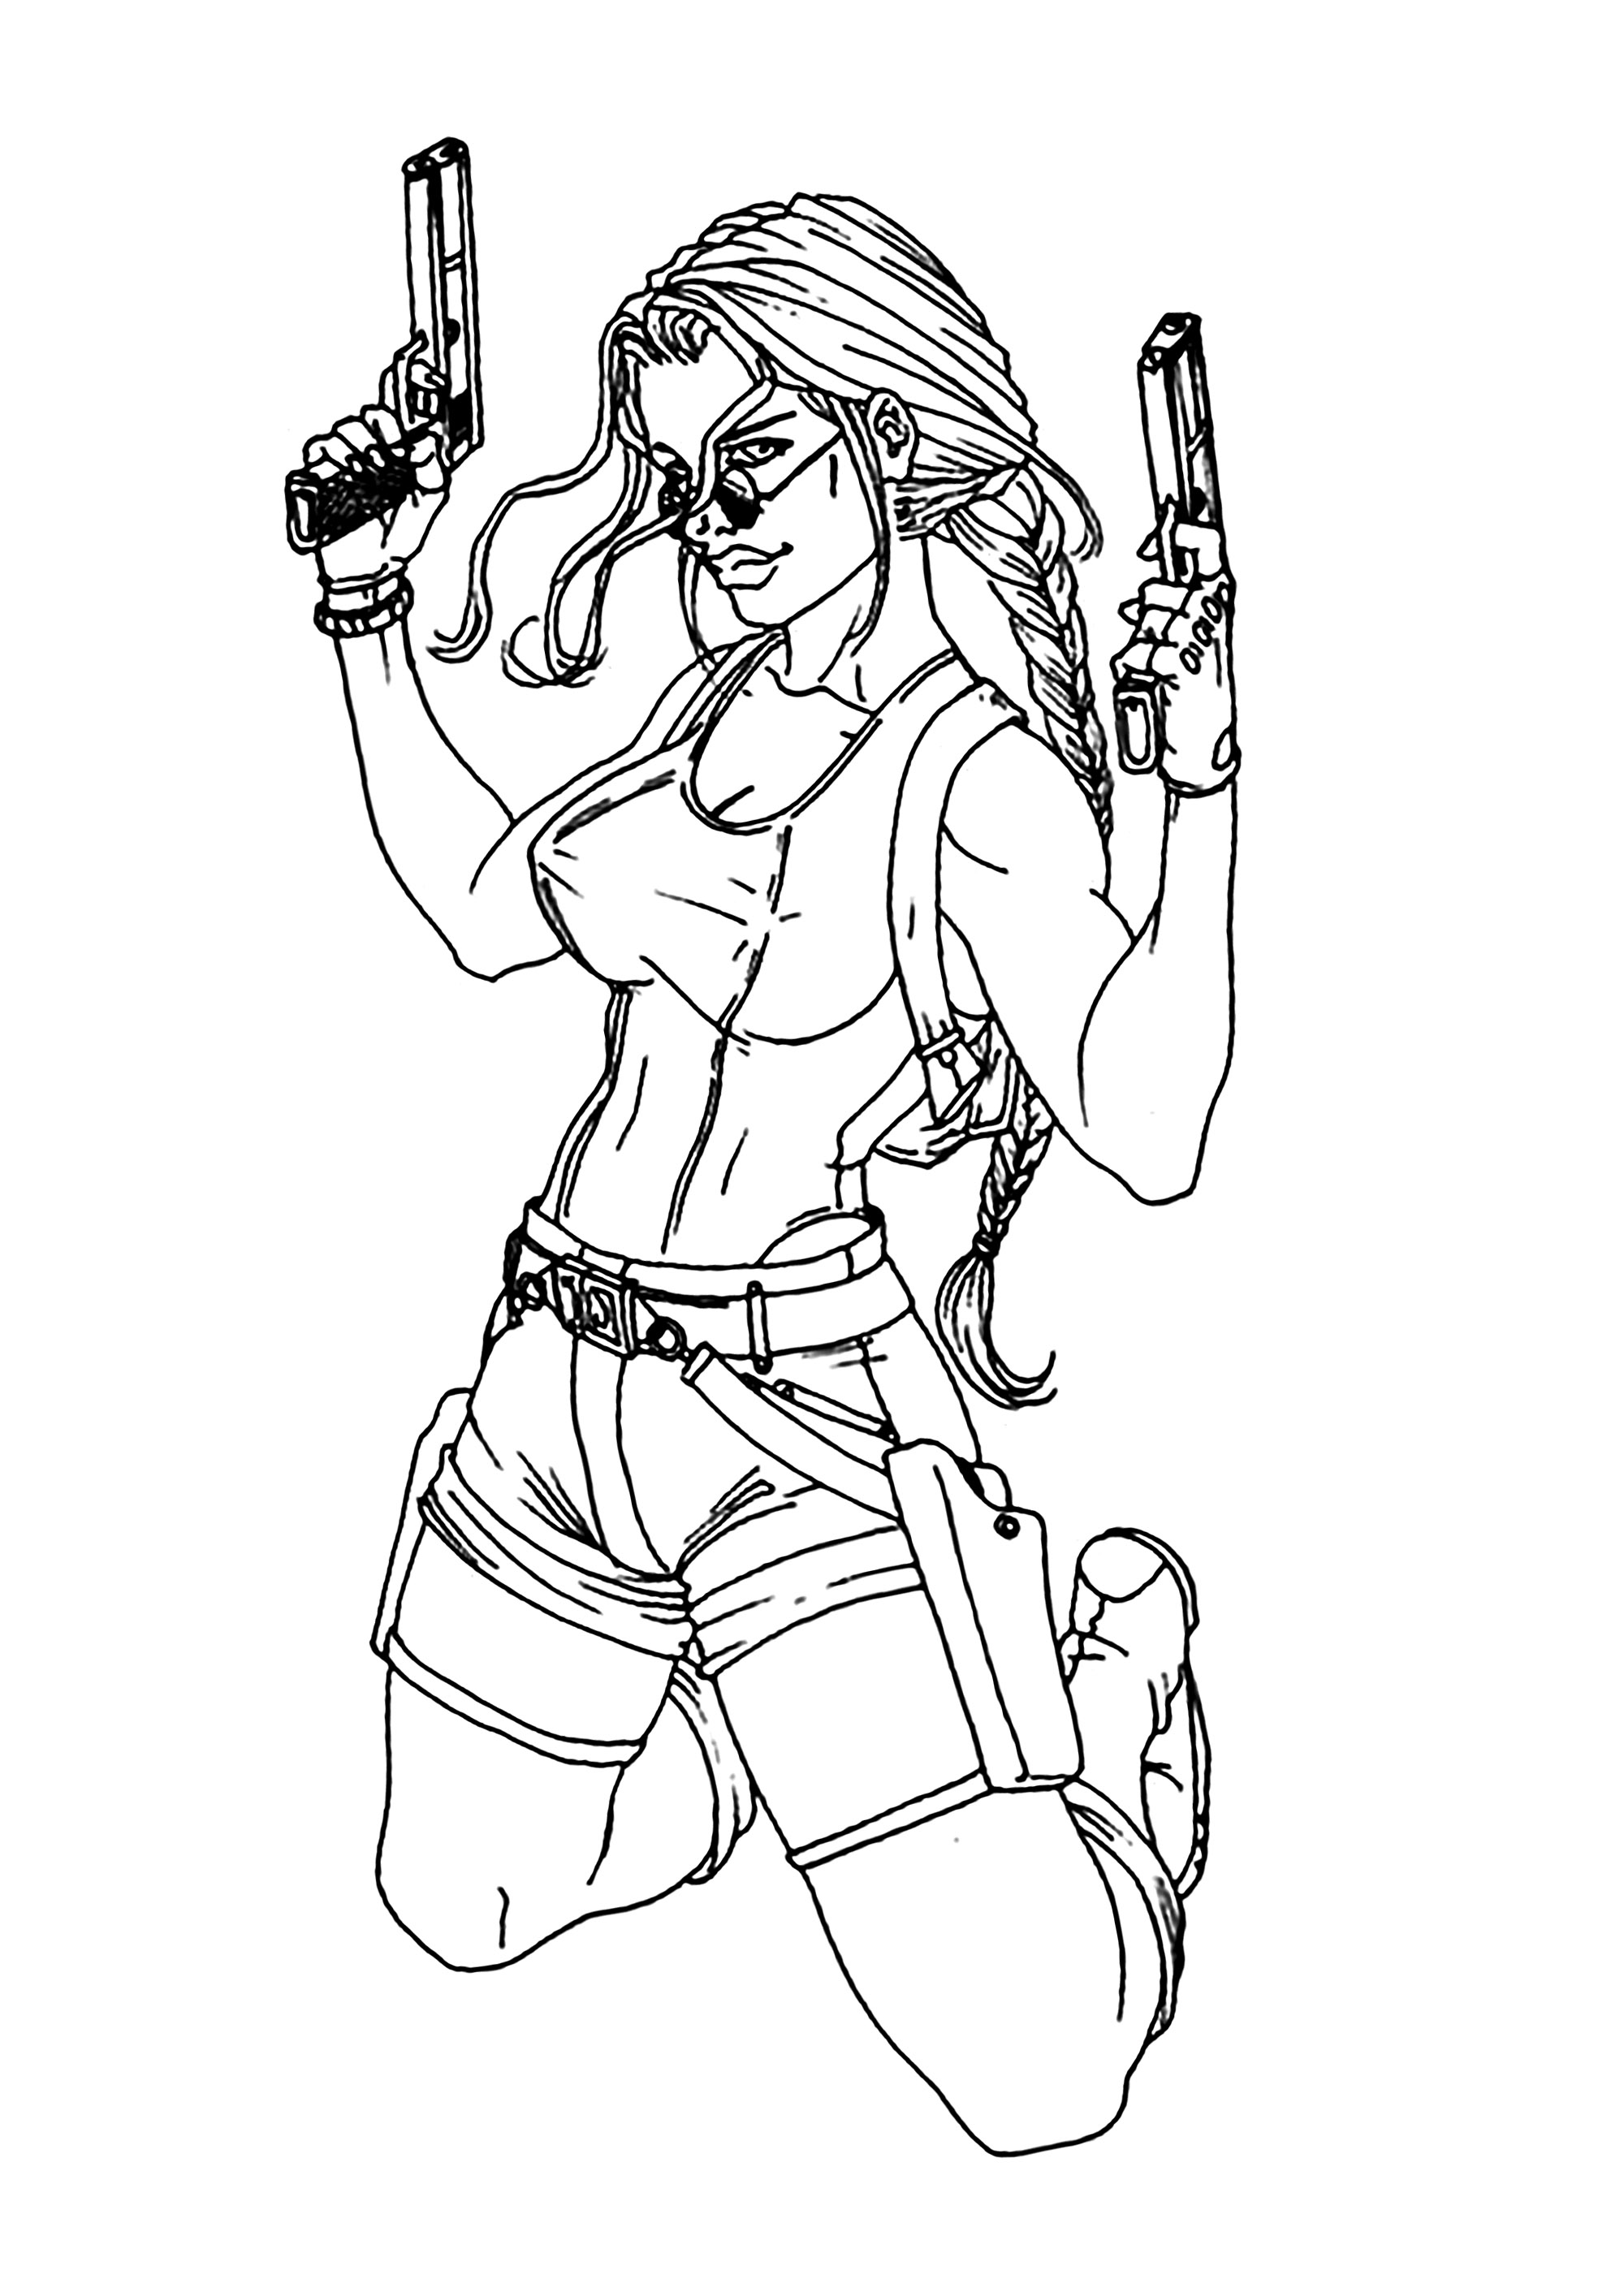 Lara Croft con sus gafas y dos pistolas